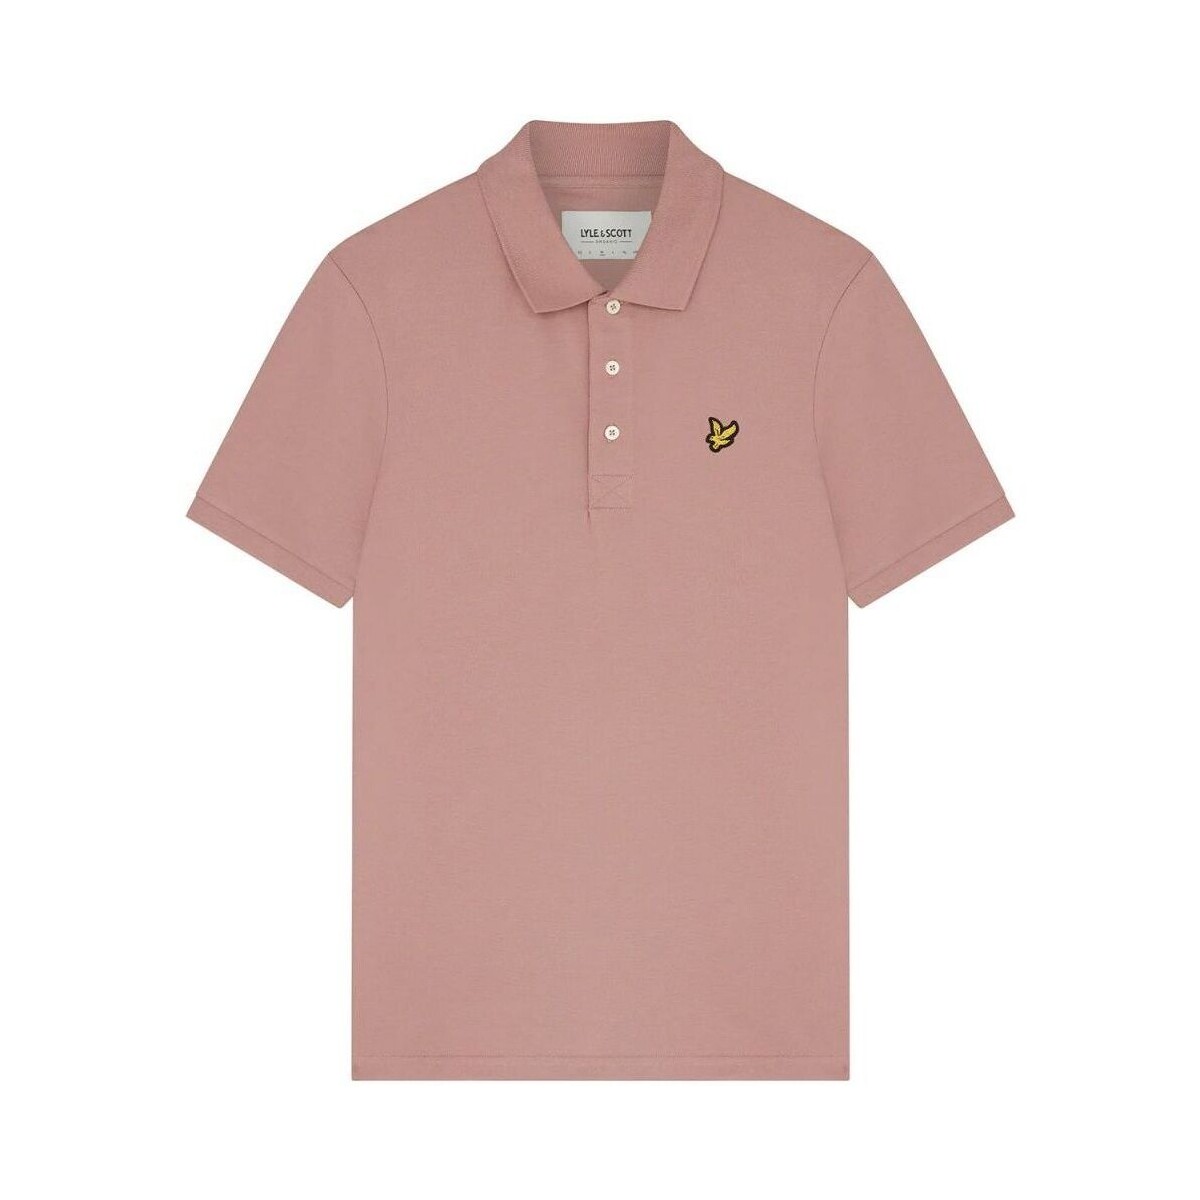 Vêtements Homme T-shirts & Polos Lyle & Scott SP400VOG POLO SHIRT-W868 HUTTON PINK Rose